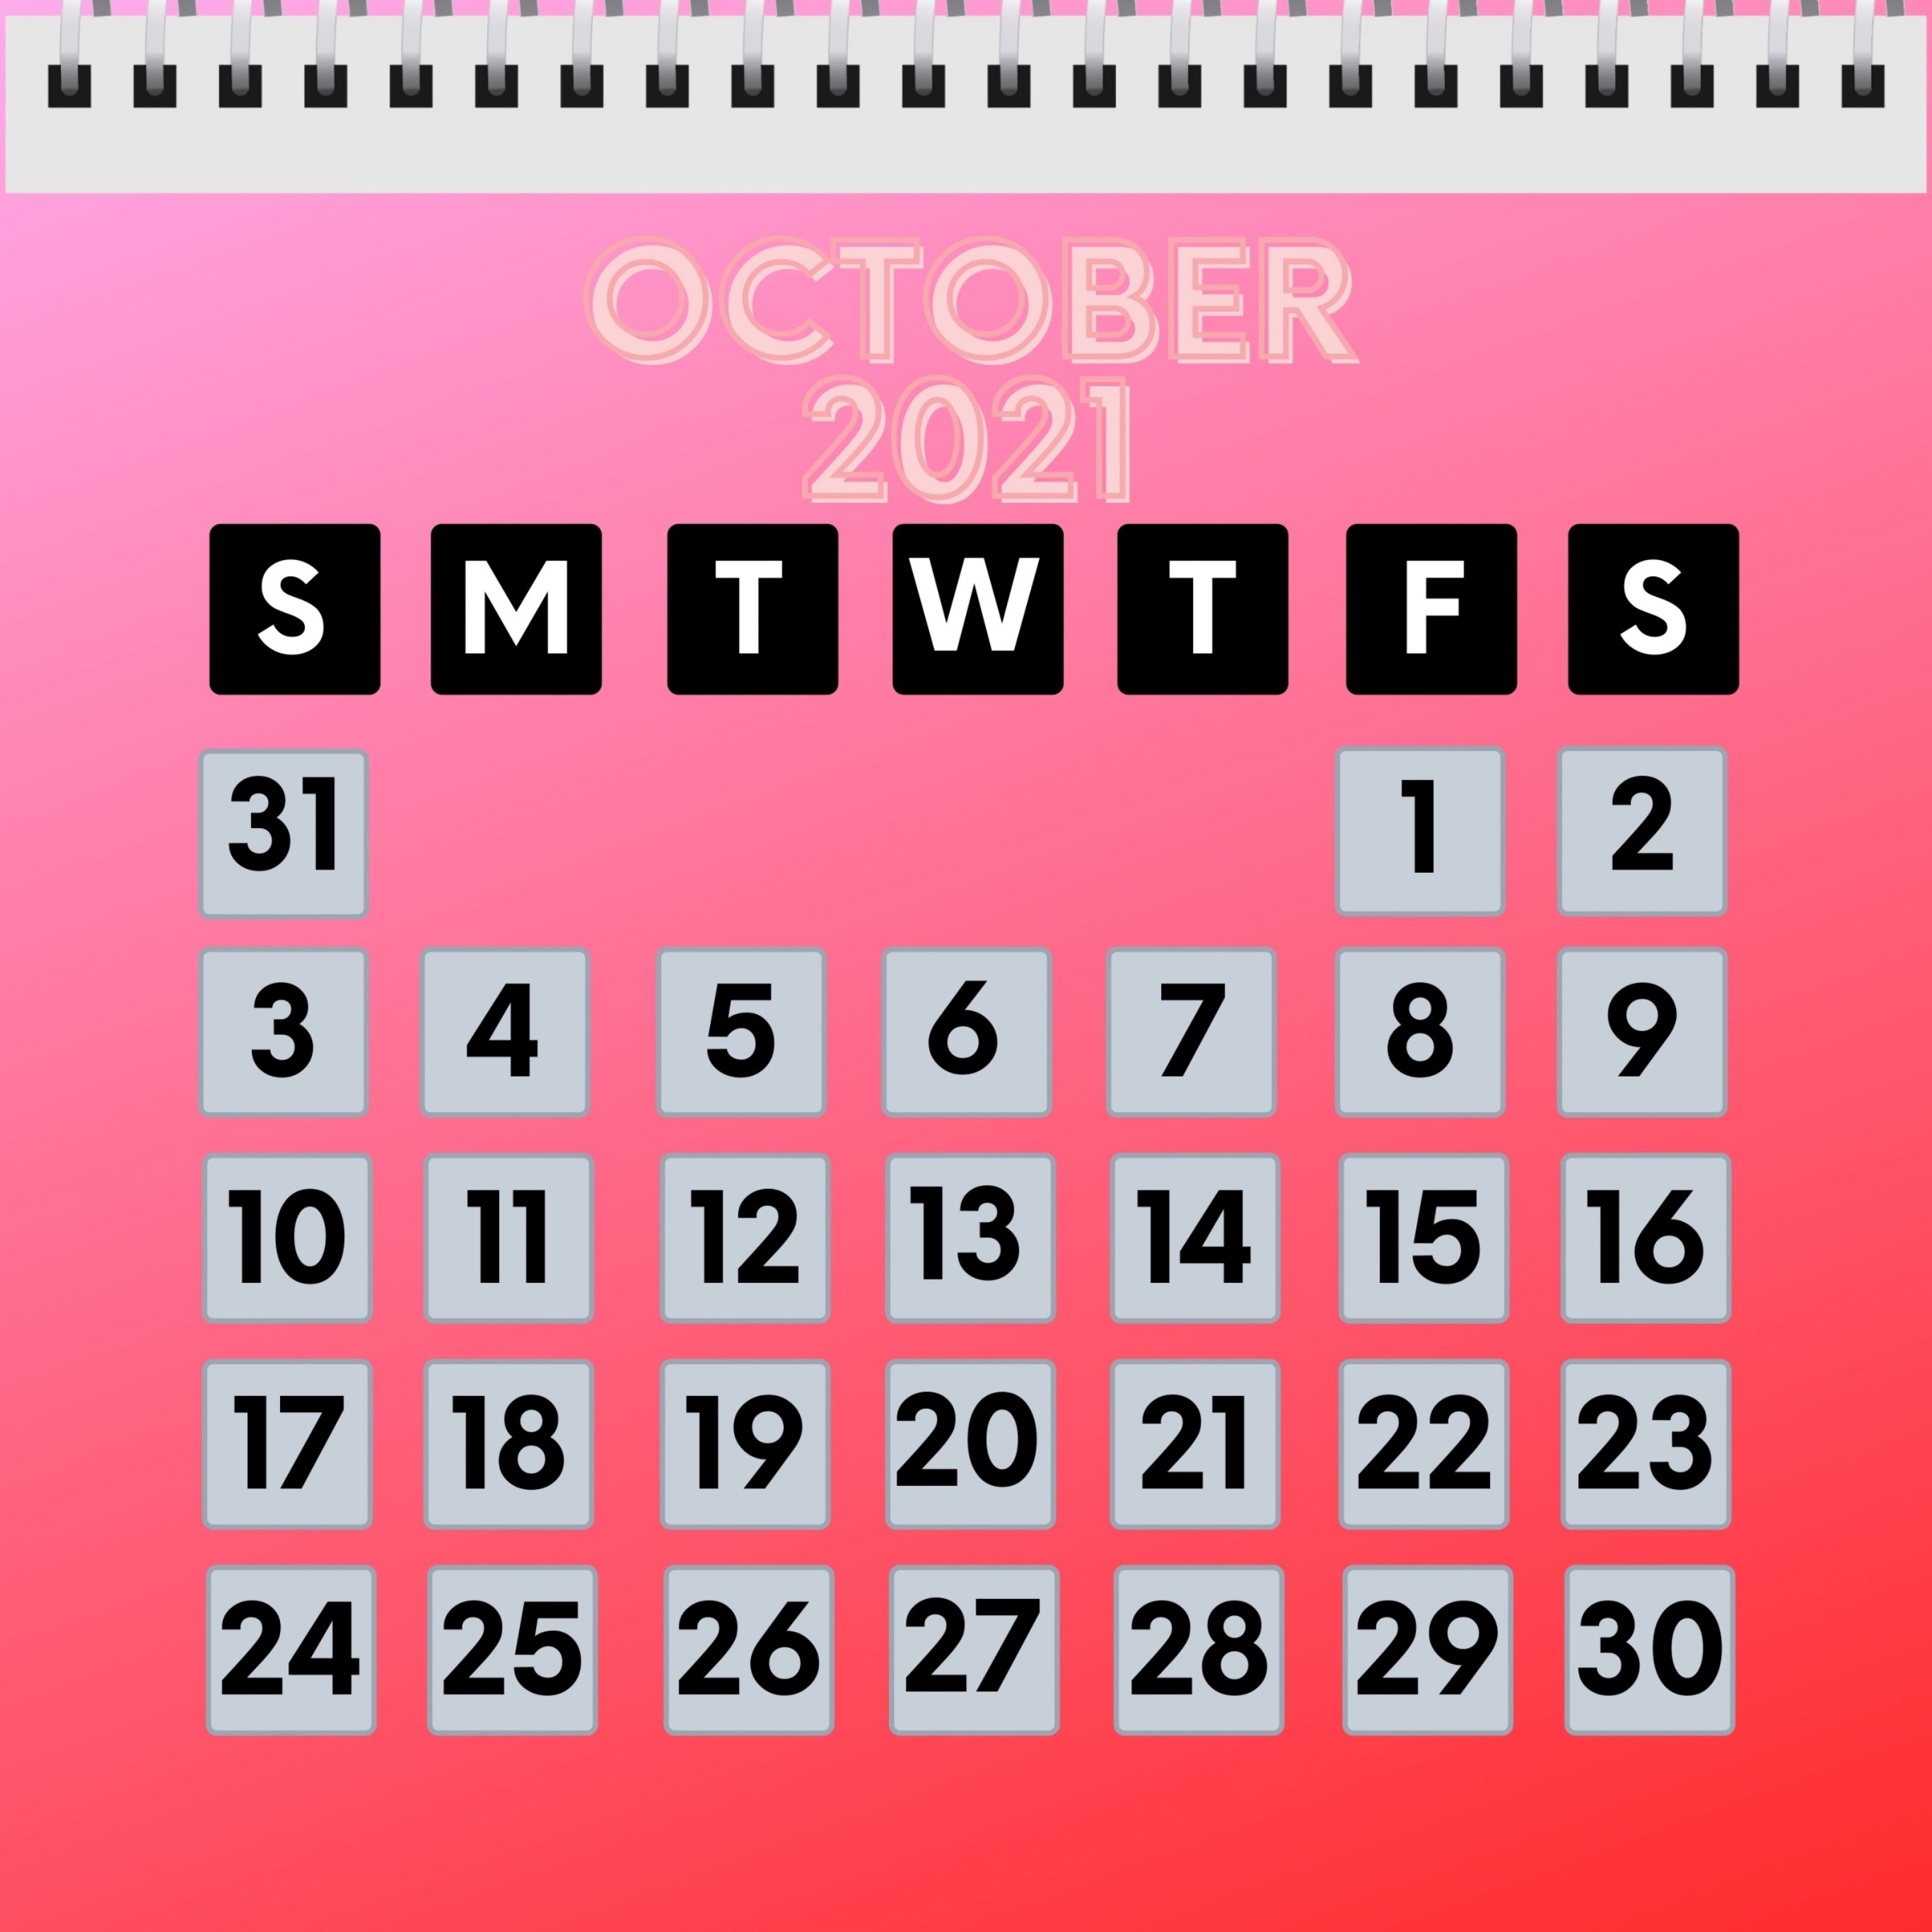 2732x2732 wallpapers 4k iPad Pro October 2021 Calendar iPad Wallpaper 2732x2732 pixels resolution